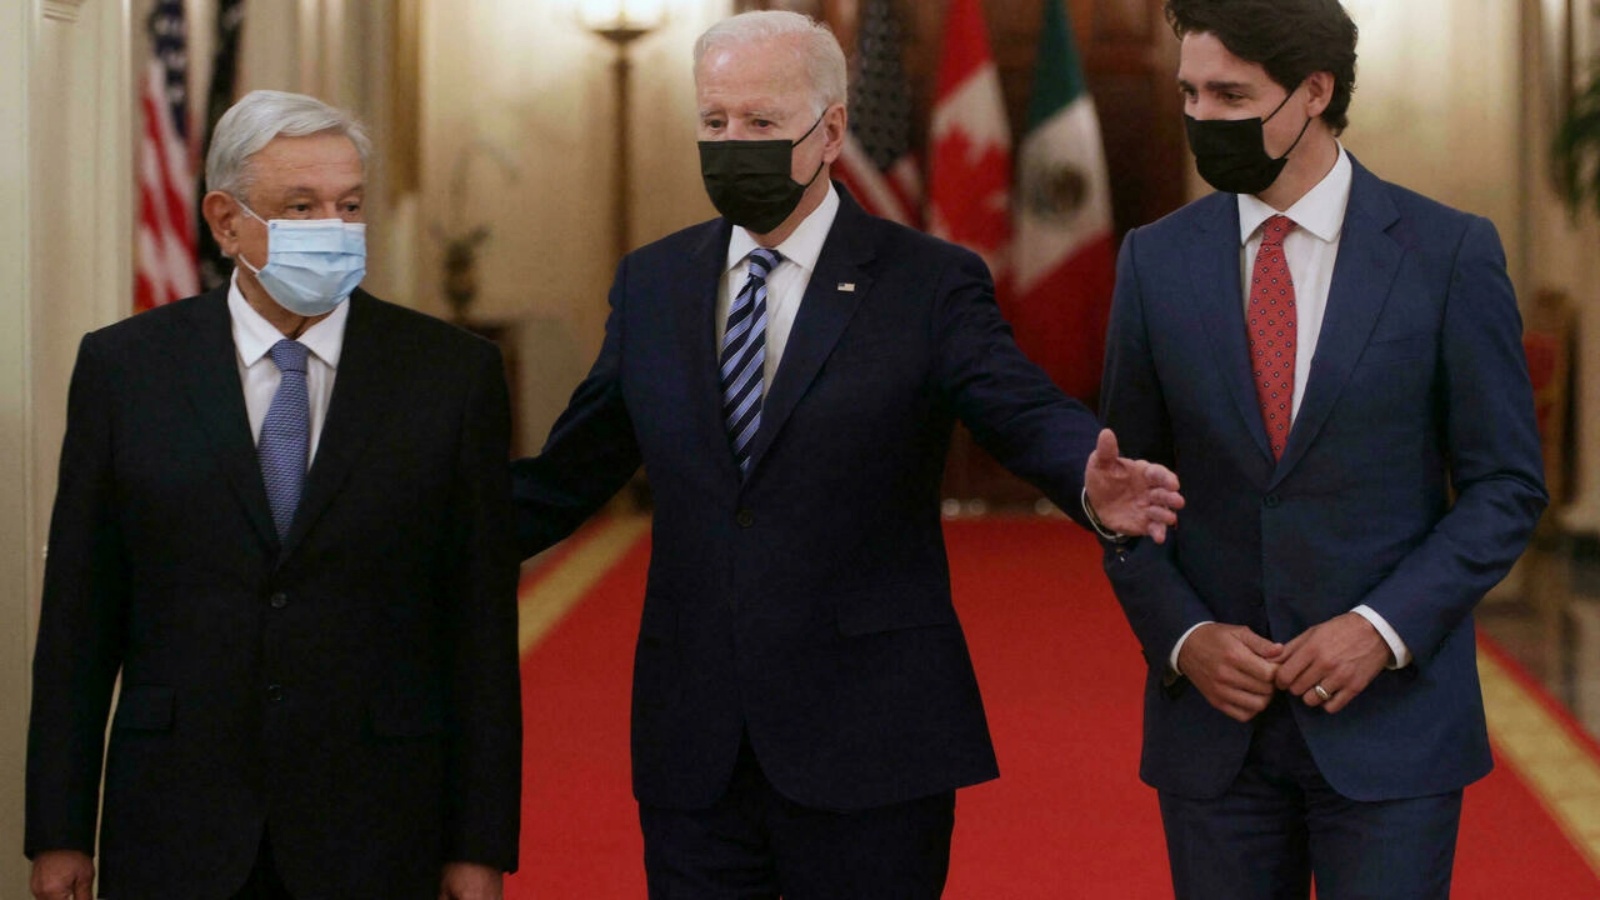 الرئيس الأميركي جو بايدن يستقبل رئيس الوزراء الكندي جاستن ترودو (يمين) ورئيس الدولة المكسيكي أندريس مانويل لوبيز أوبرادور (يسار) في البيت الأبيض بواشنطن. في 18 تشرين الثاني/نوفمبر 2021.